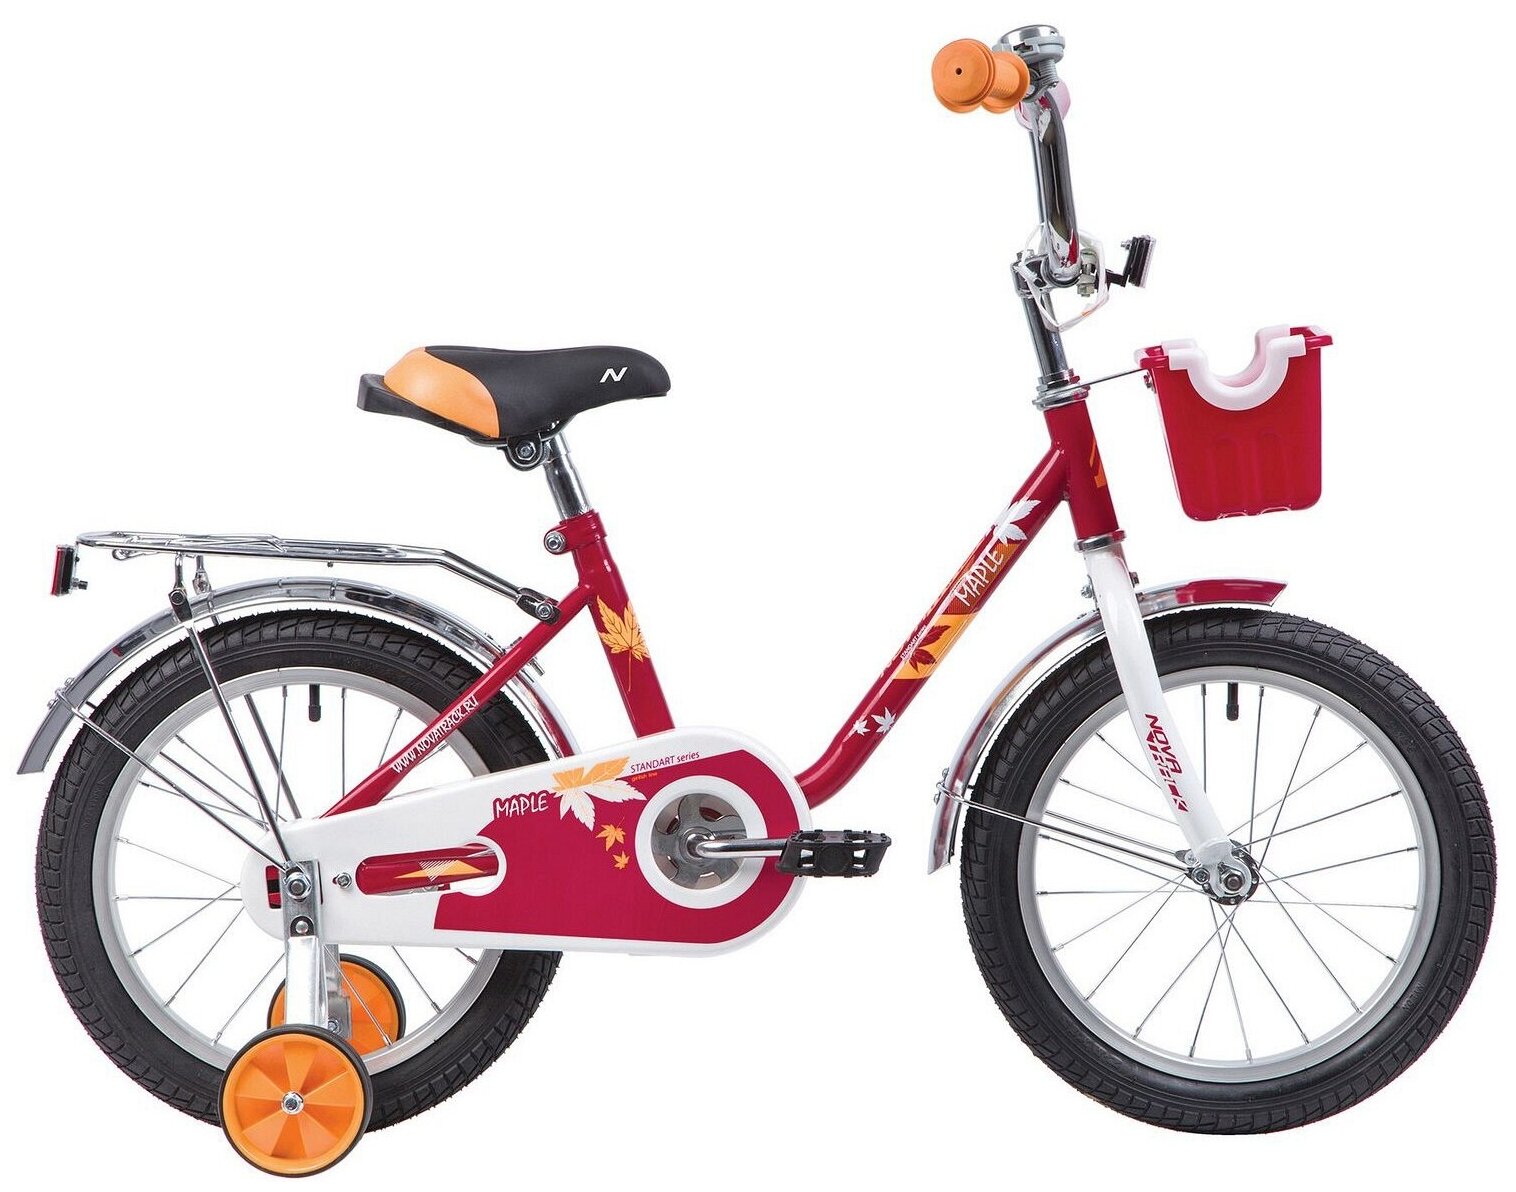 Велосипед NOVATRACK MAPLE 16" (2019) (Велосипед NOVATRACK 16" MAPLE, красный, полная защита цепи, тормоз нож, крылья и багажник хром, пер.)